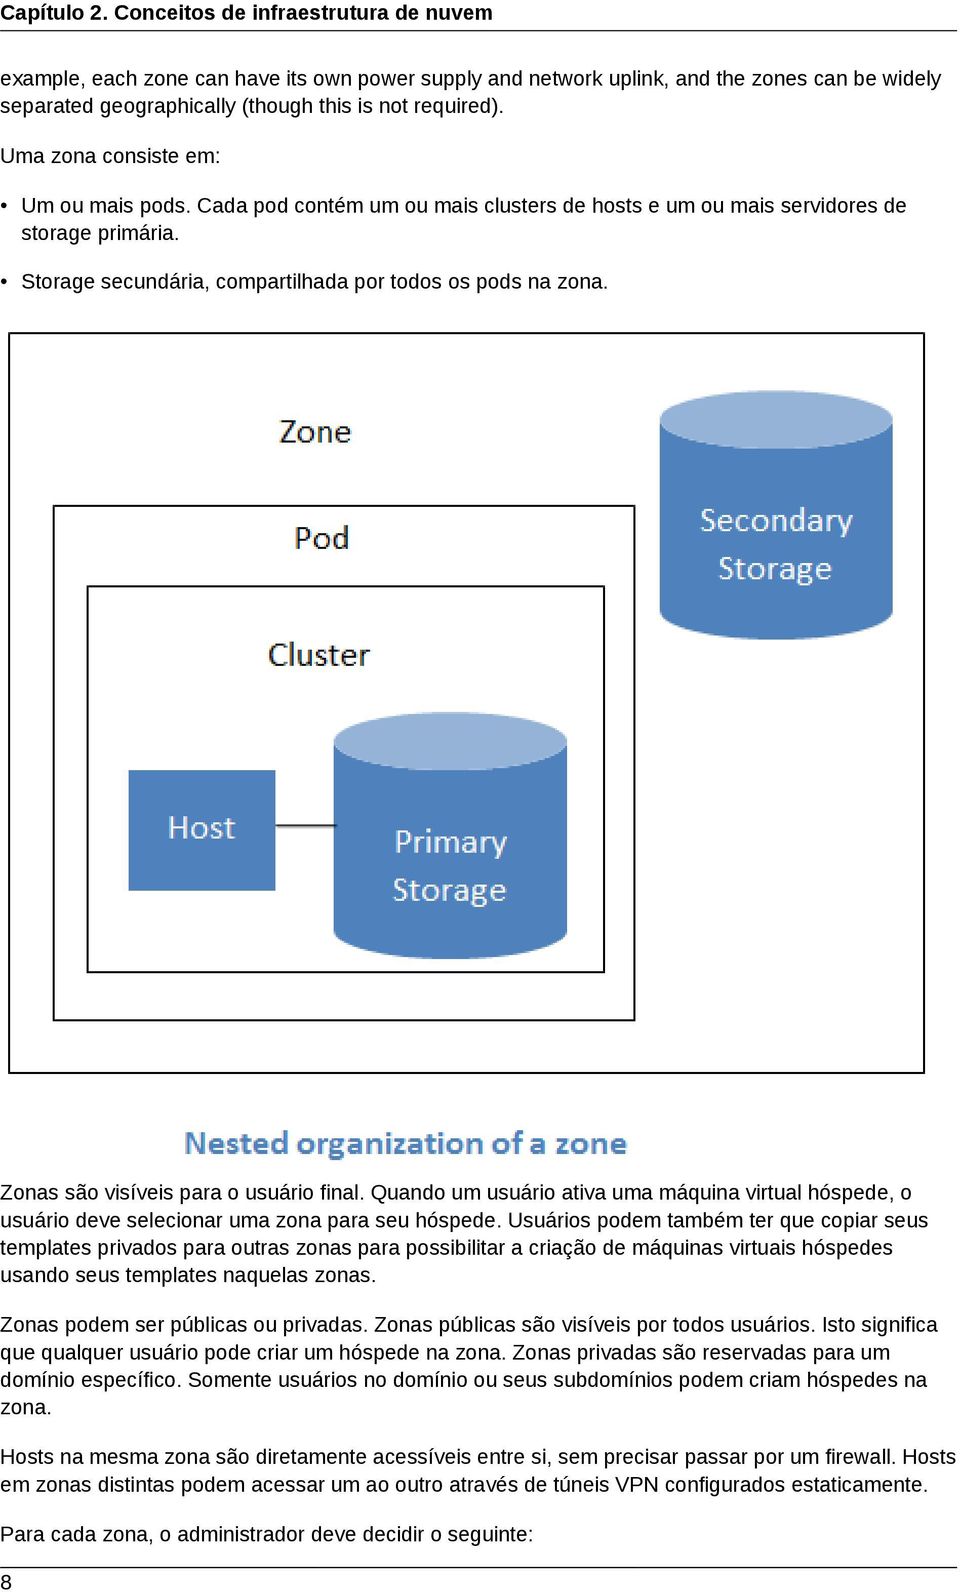 Uma zona consiste em: Um ou mais pods. Cada pod contém um ou mais clusters de hosts e um ou mais servidores de storage primária. Storage secundária, compartilhada por todos os pods na zona.